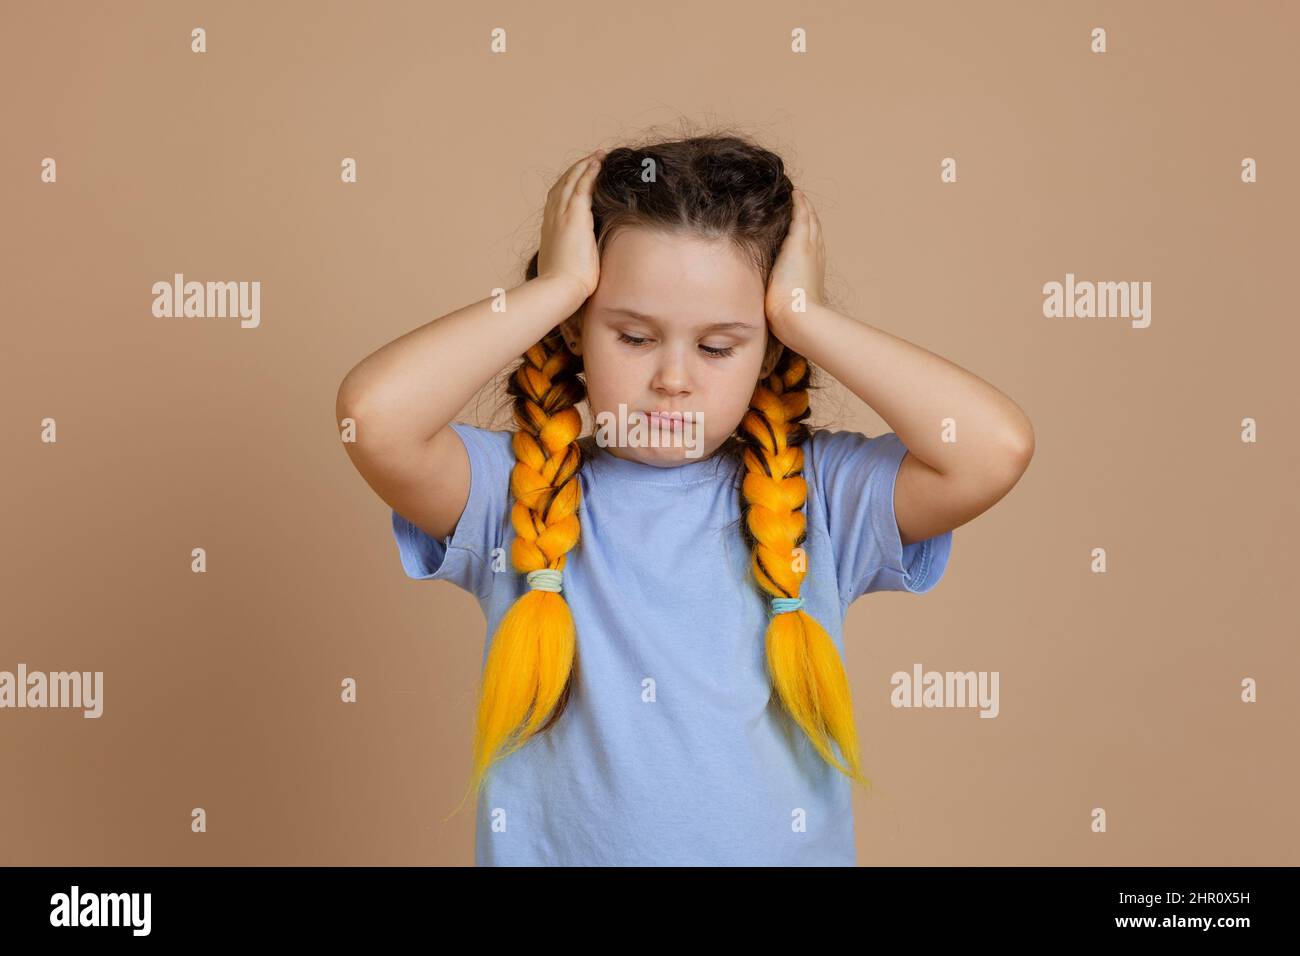 Arrabbiato caucasico bambino femmina che tiene testa con le mani guardando verso il basso avendo kanekalon trecce di colore giallo sulla testa in blu t-shirt sul beige Foto Stock